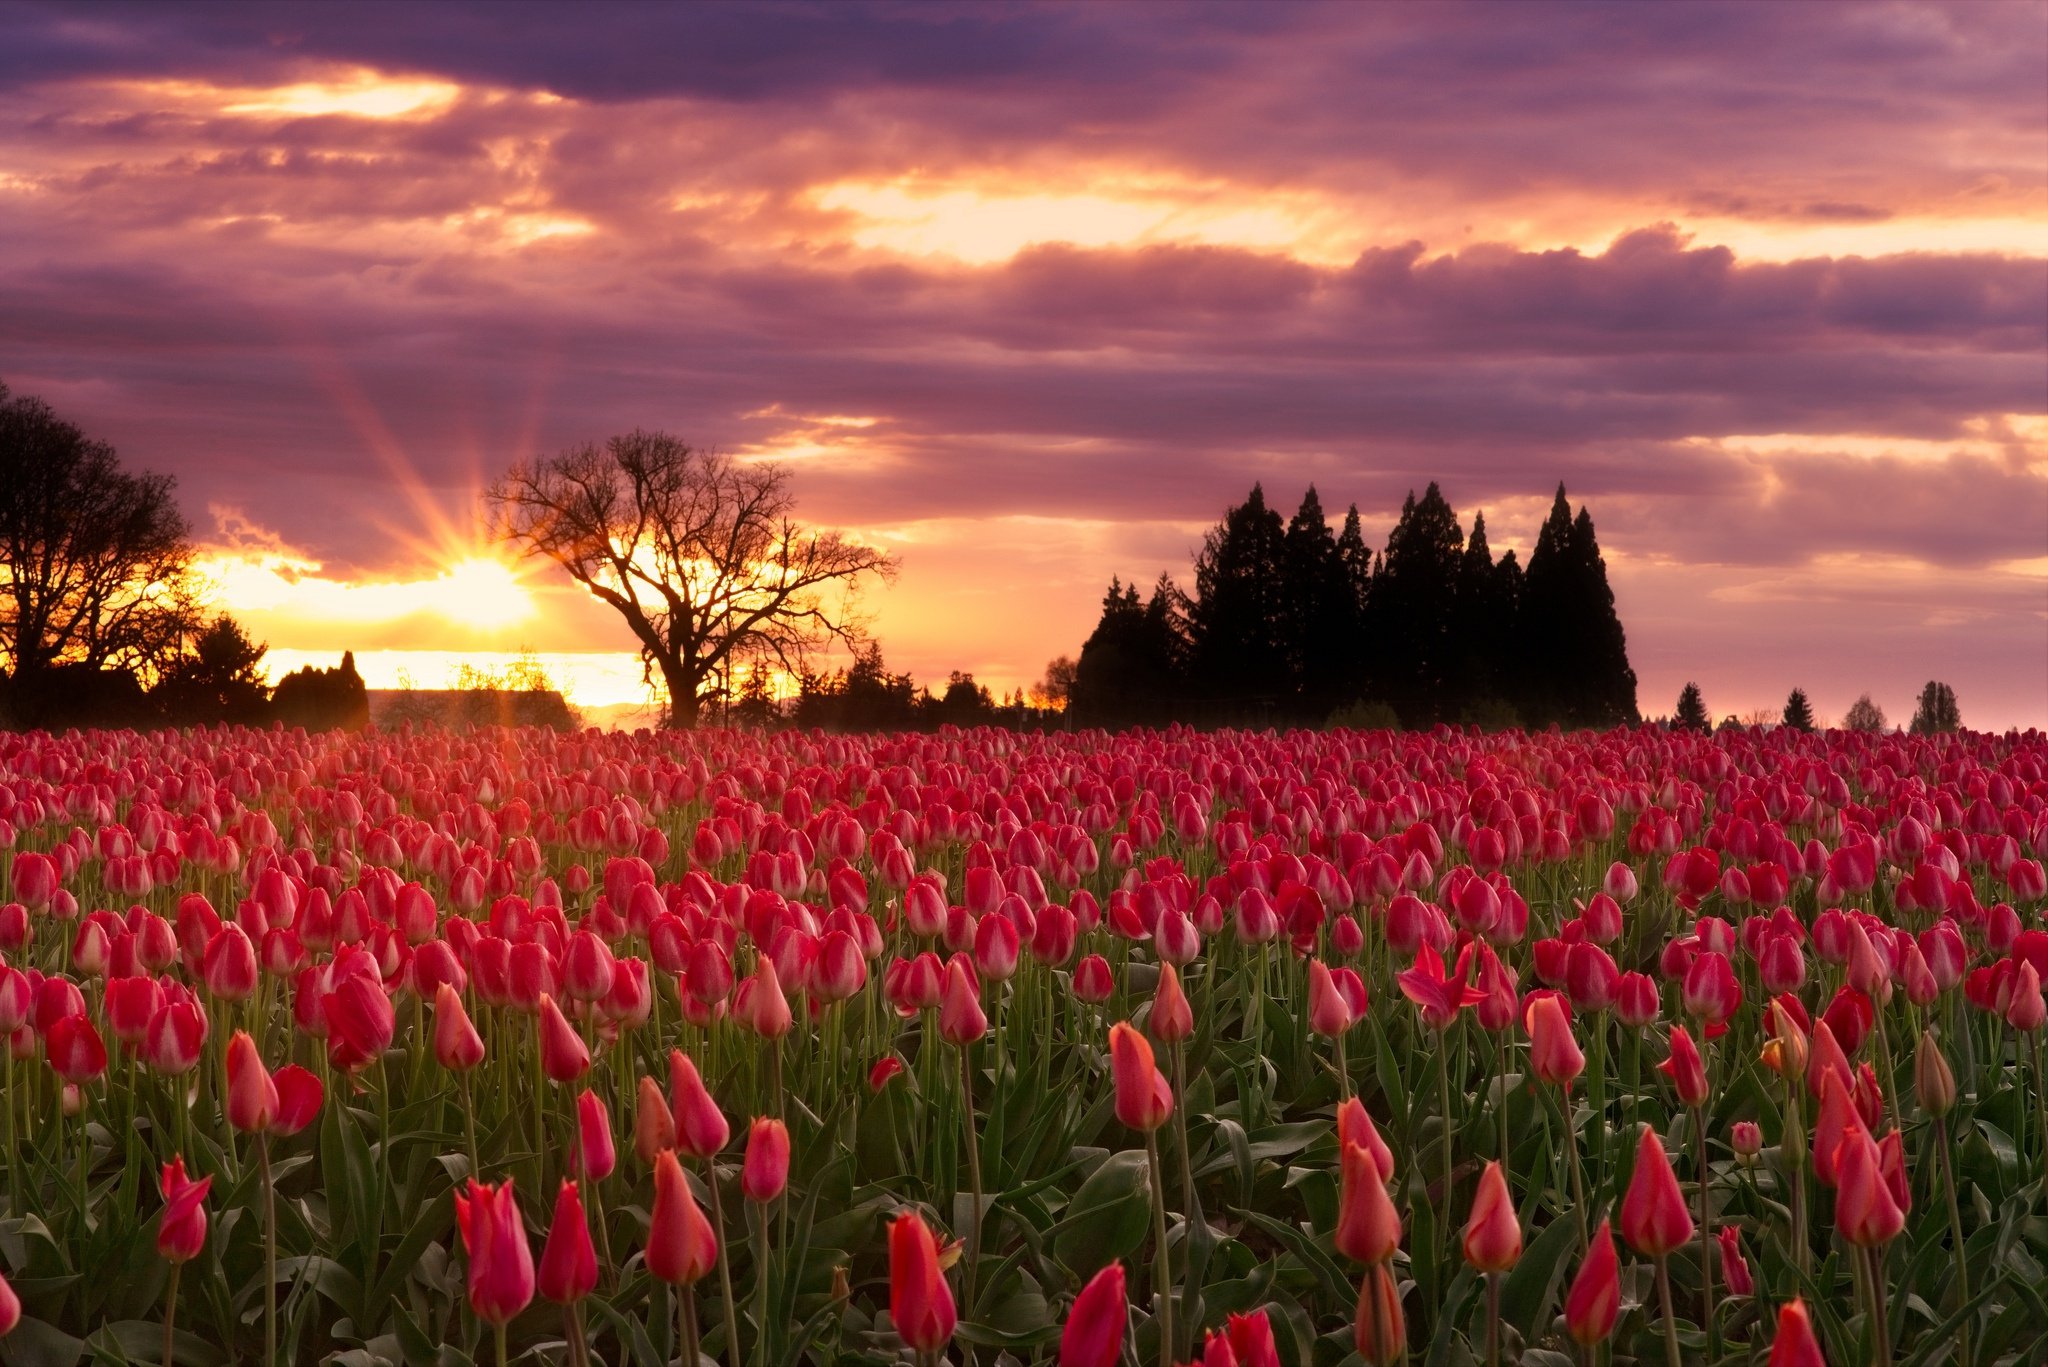 Flower sunset. Цветочное поле. Поле тюльпанов. Красивые цветочные поля. Самые красивые цветочные поля.